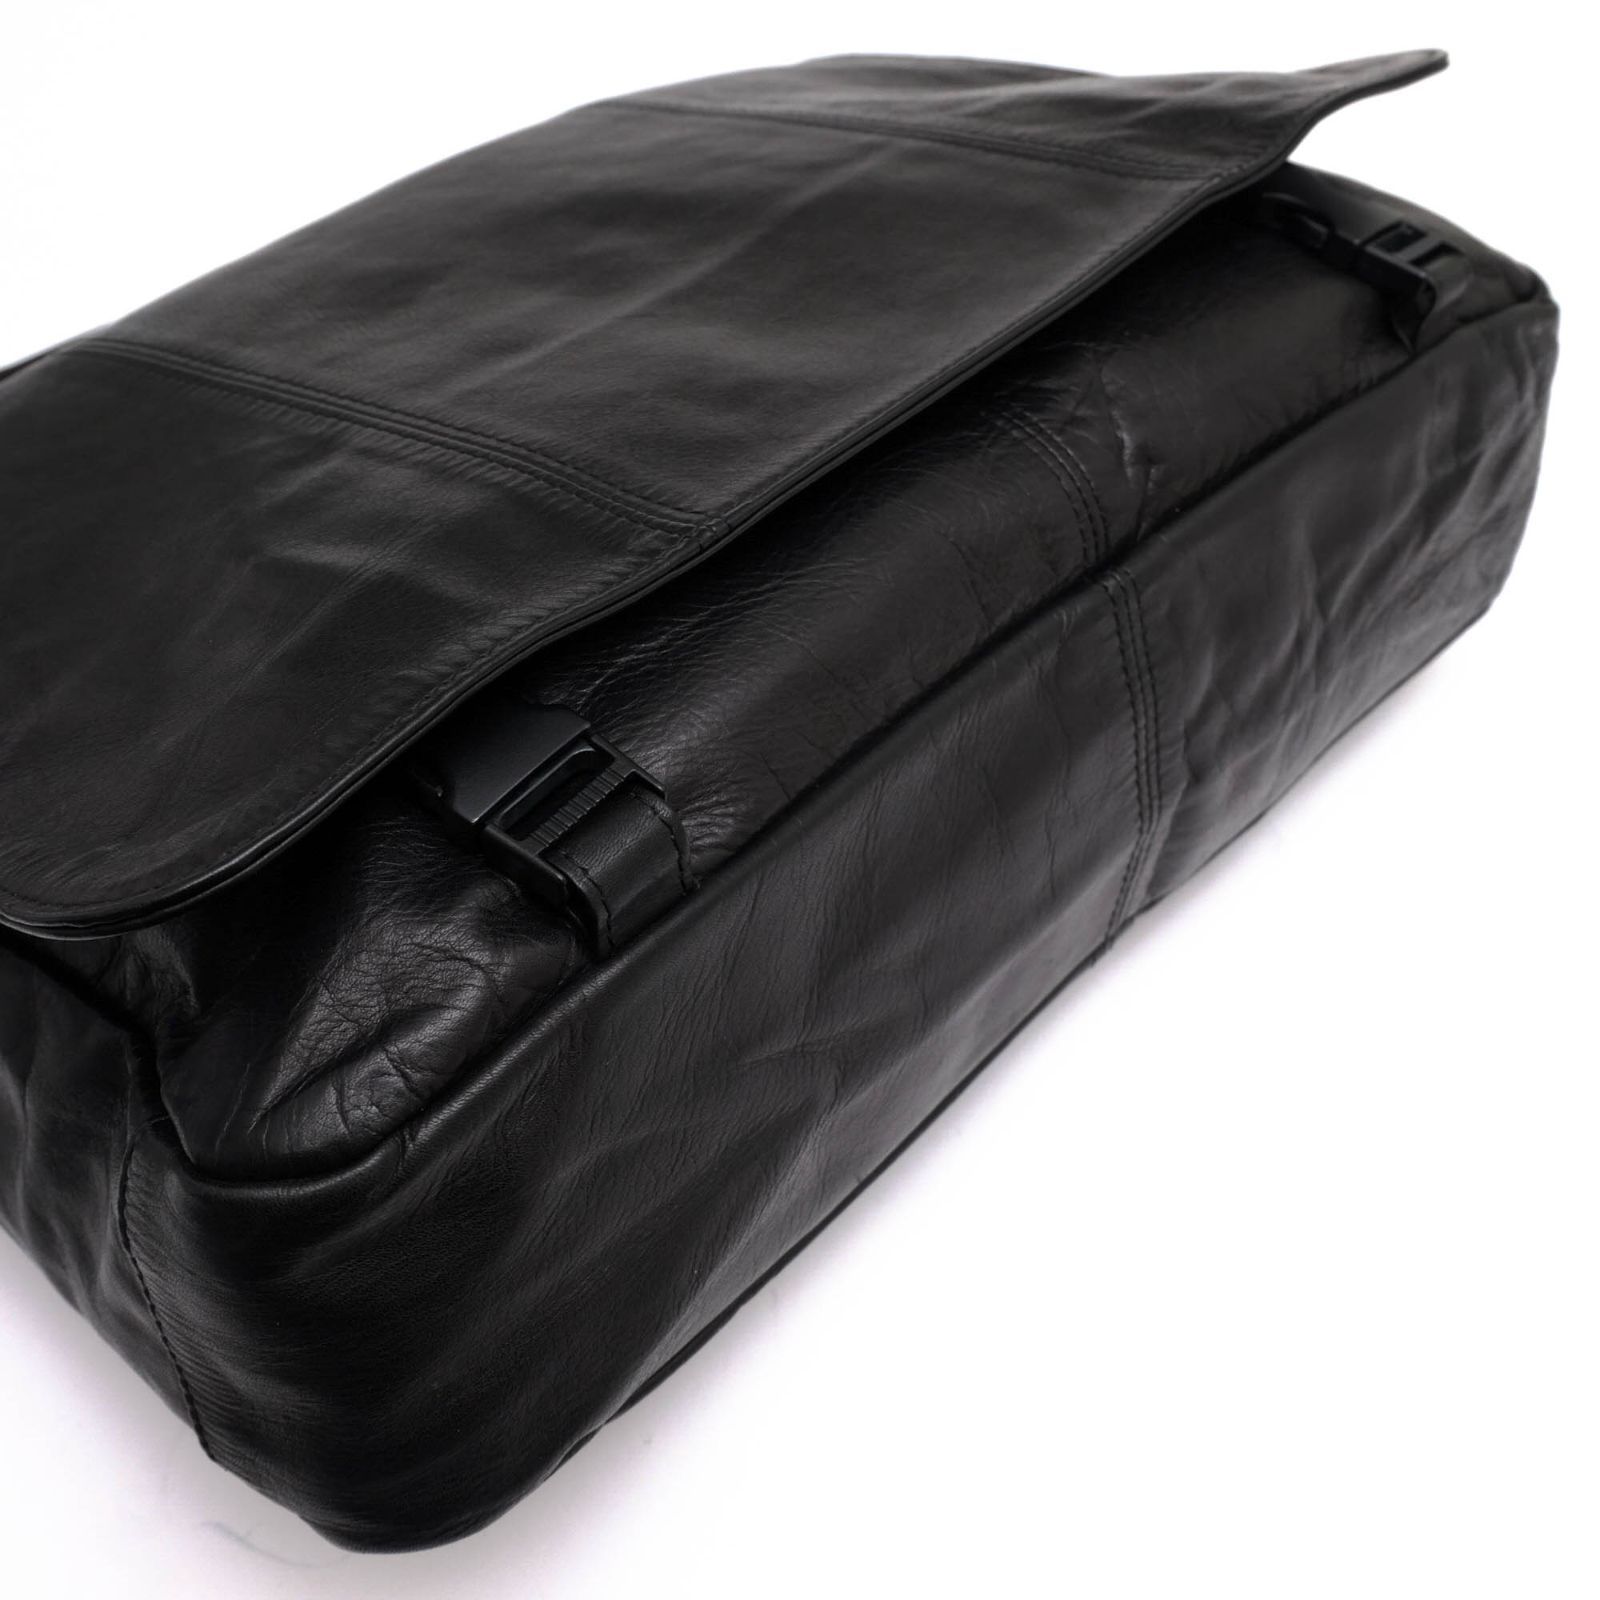 ポーター 吉田カバン／PORTER バッグ ショルダーバッグ 鞄 メンズ 男性 男性用レザー 革 本革 ブラック 黒  メッセンジャーバッグ